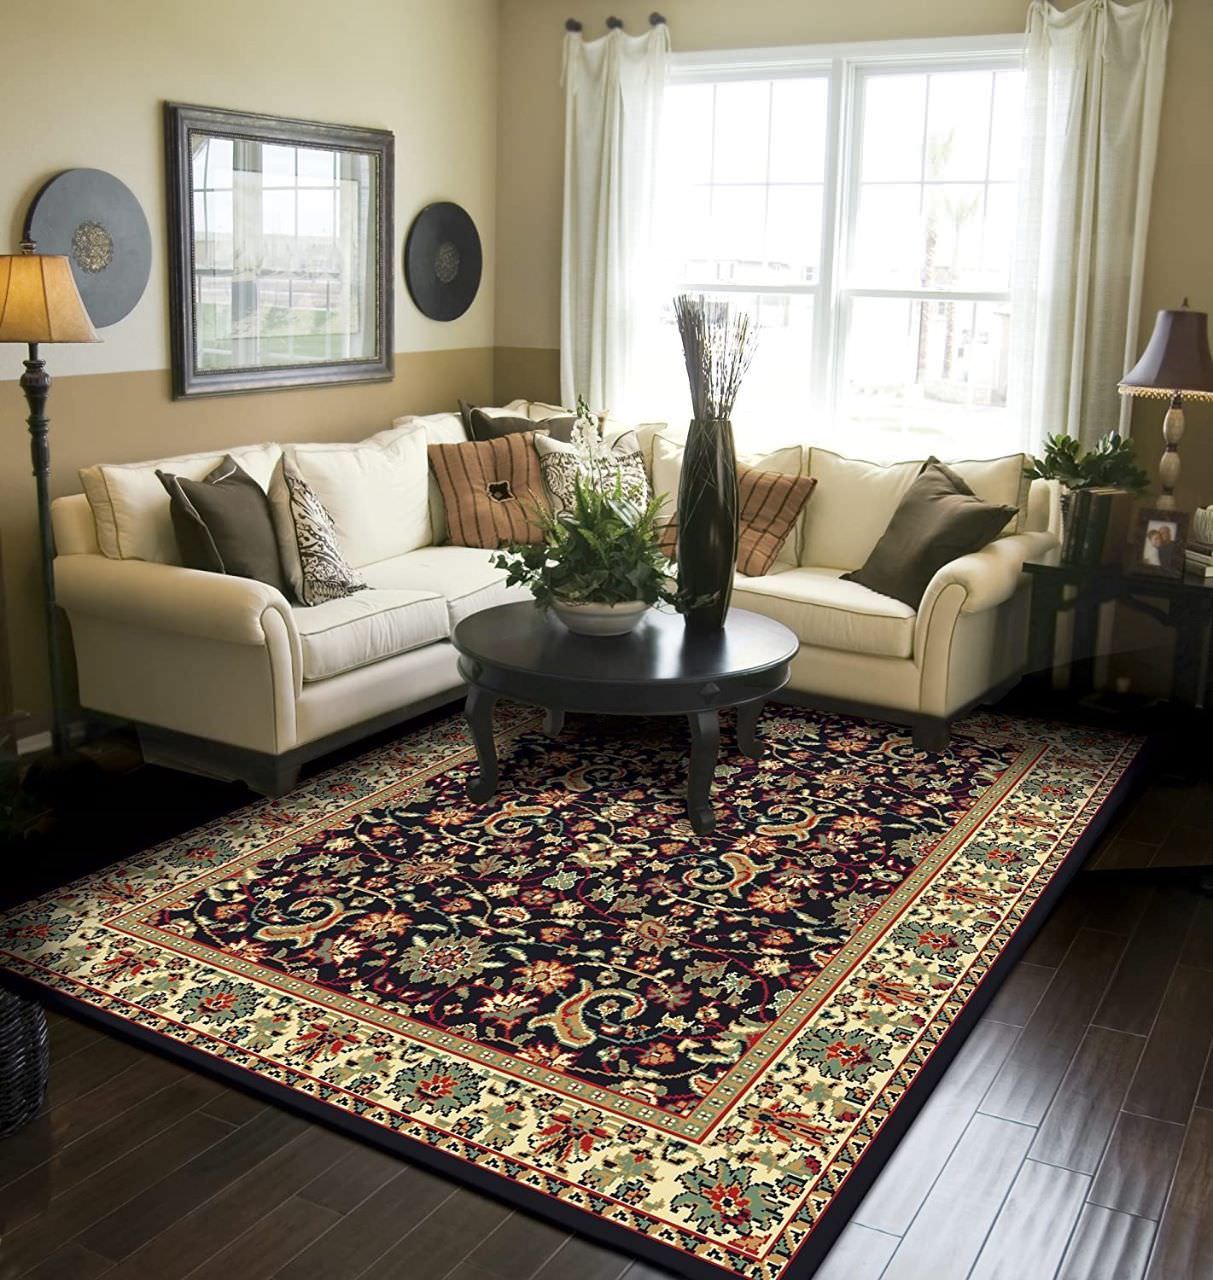 Thảm lót sàn hoạ tiết độc đáo mang phong cách vintage cho phòng khách thêm bắt mắt